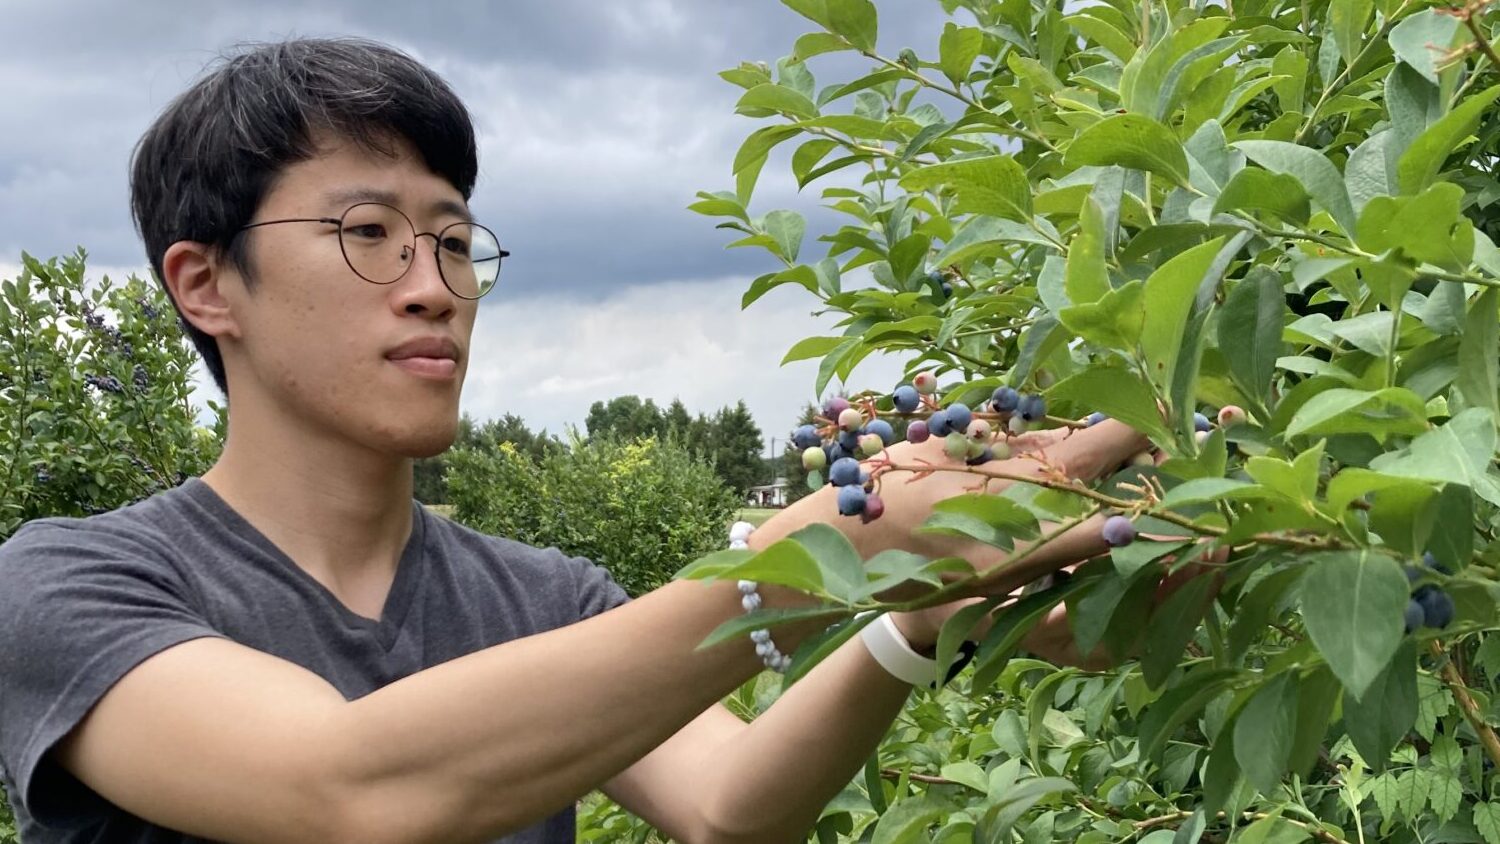 Heeduk harvests blueberries